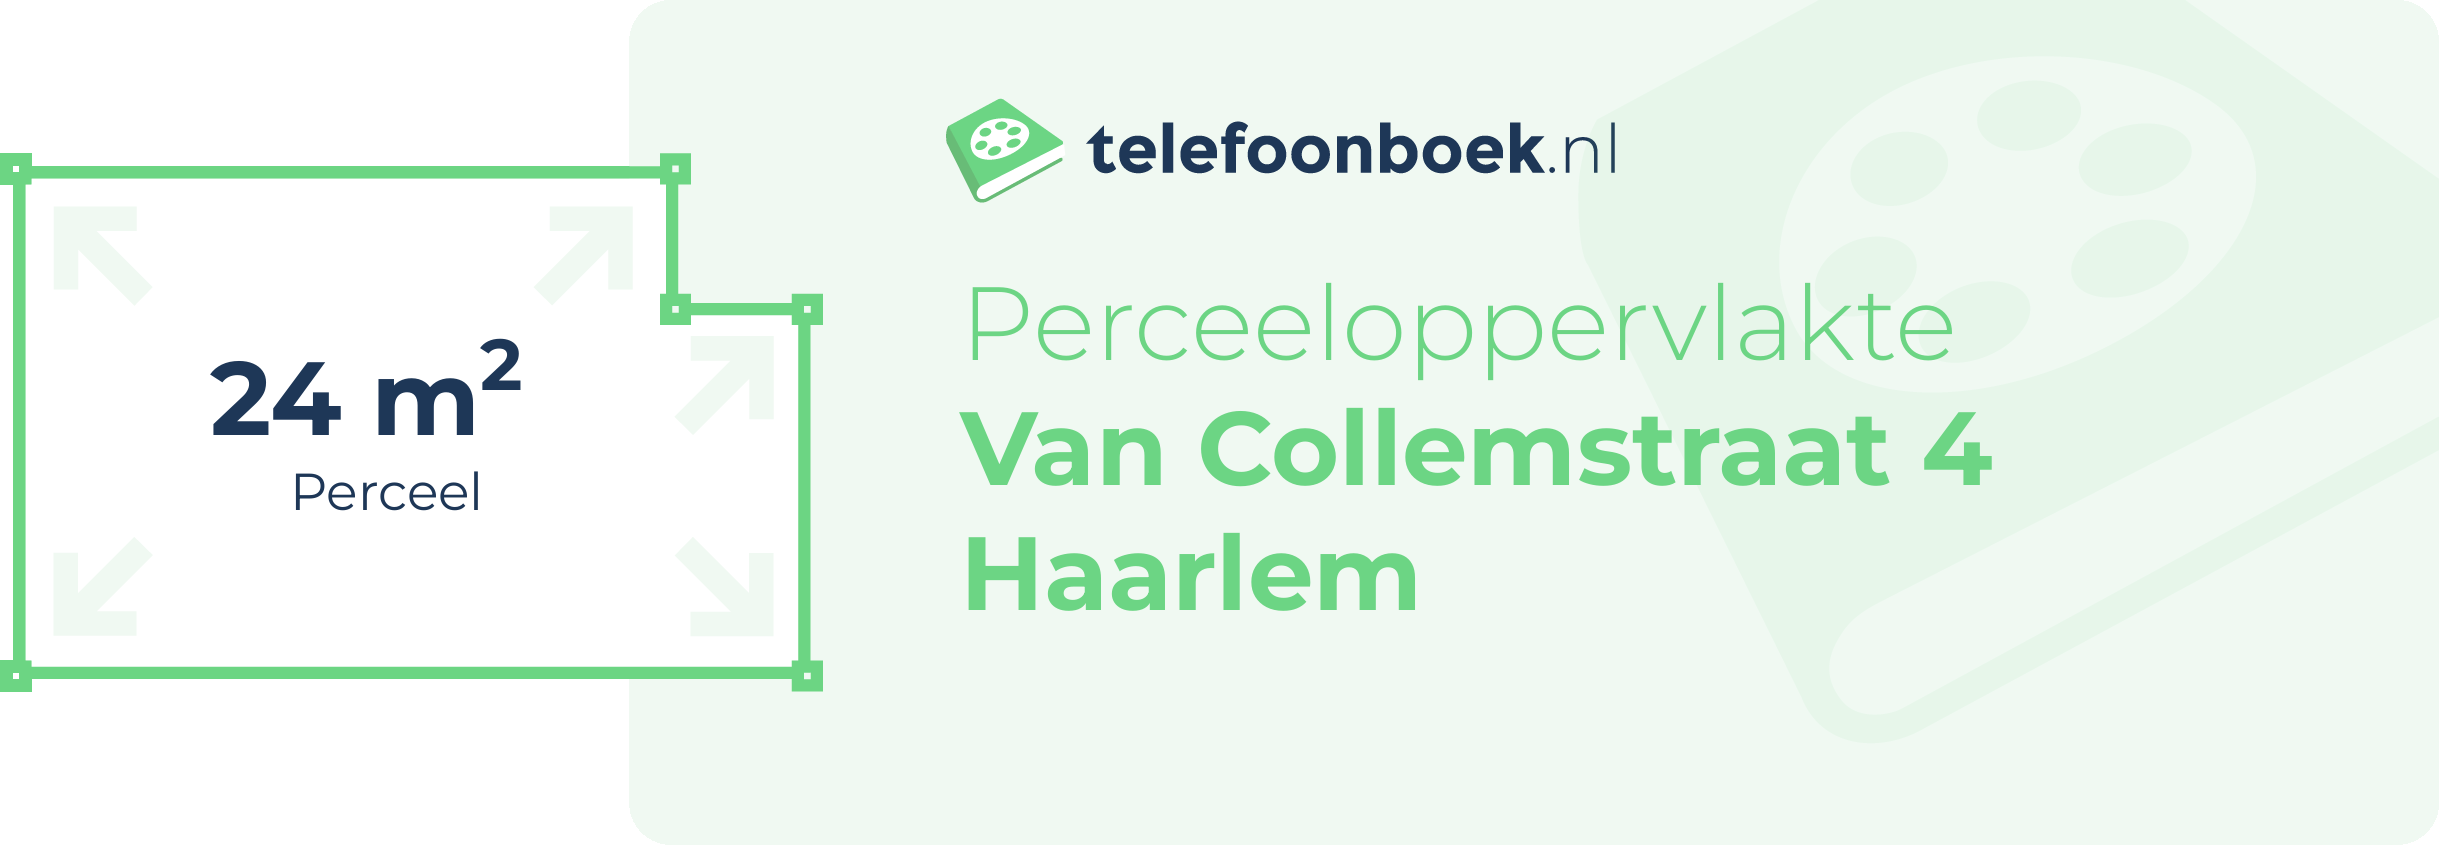 Perceeloppervlakte Van Collemstraat 4 Haarlem